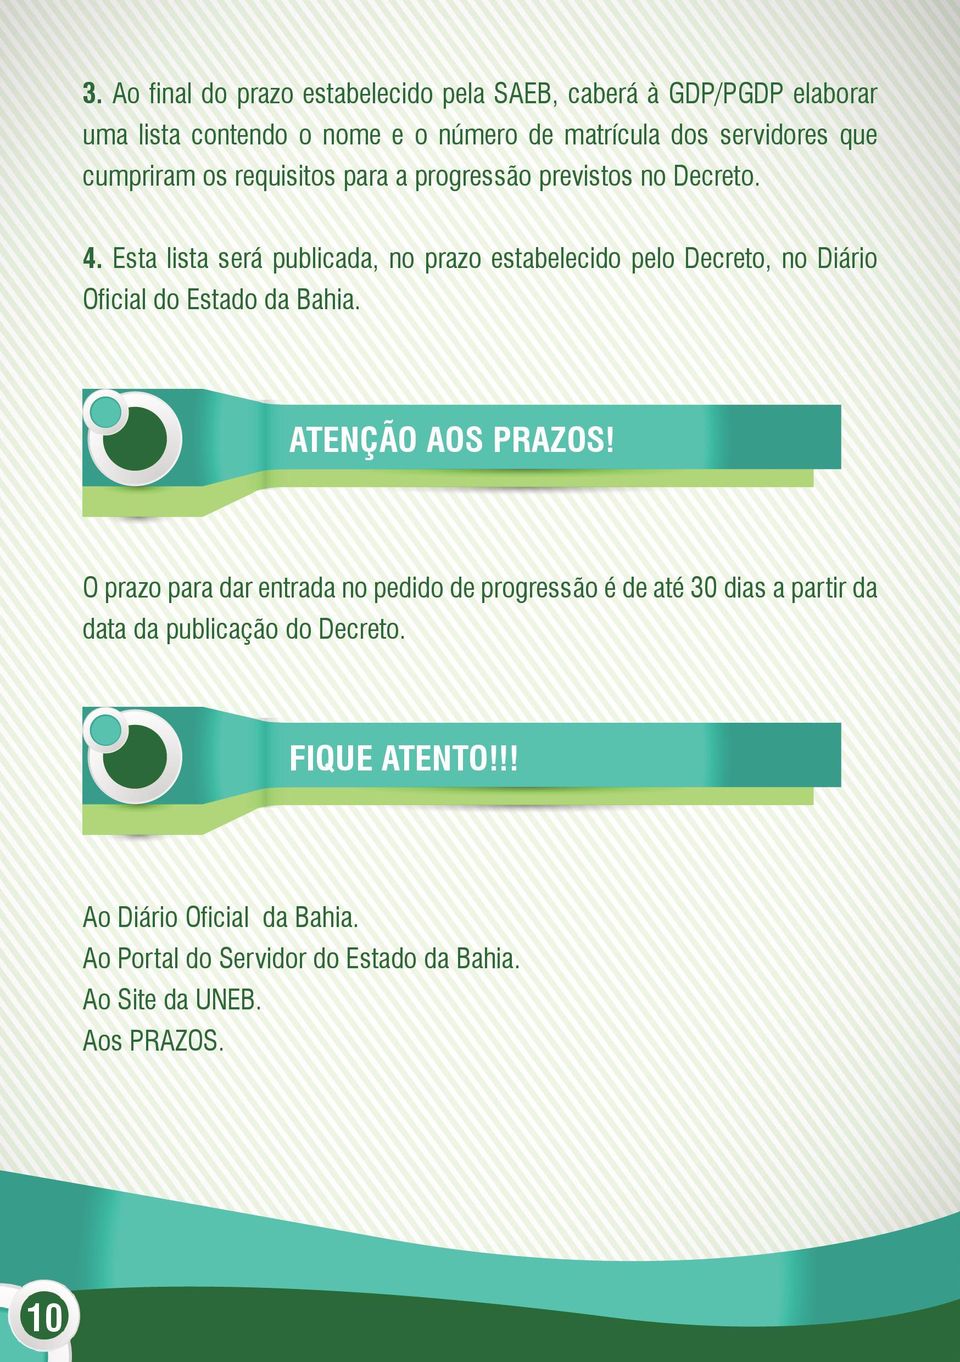 Esta lista será publicada, no prazo estabelecido pelo Decreto, no Diário Oficial do Estado da Bahia. ATENÇÃO AOS PRAZOS!